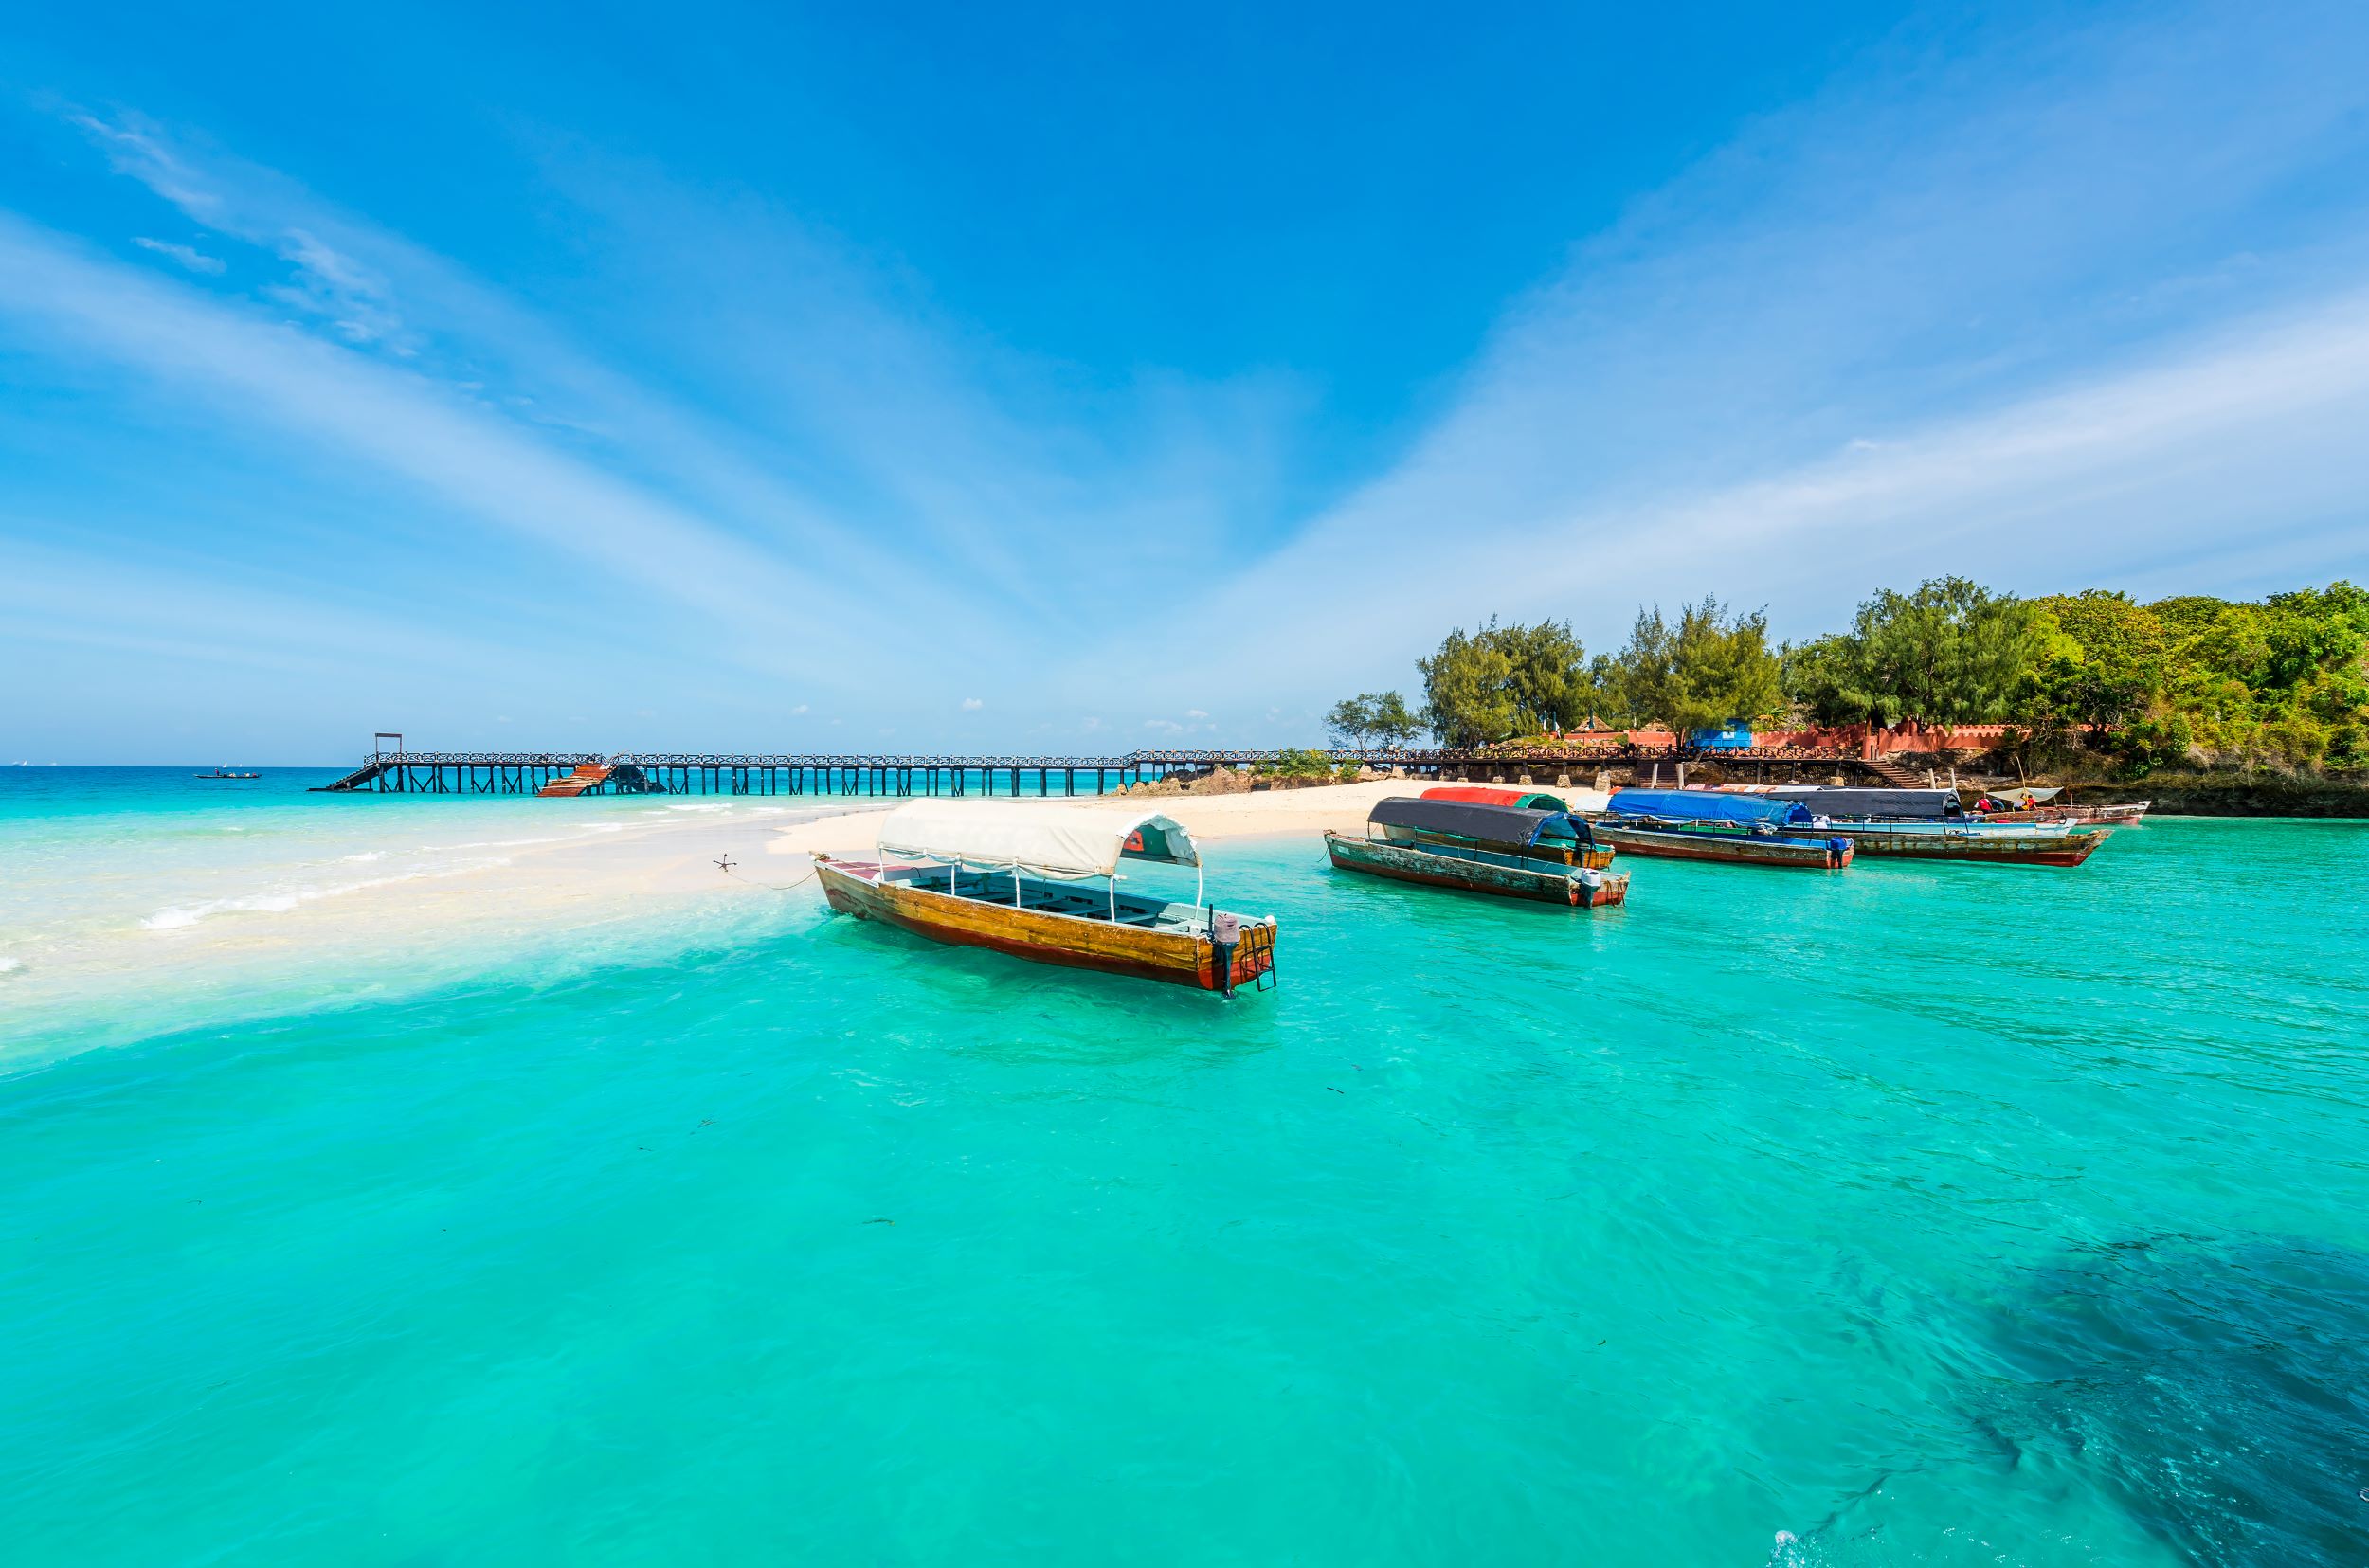 Zanzibar in futuristični Dubaj<br />
Odhod: 28. 10. 2023, 9 dni